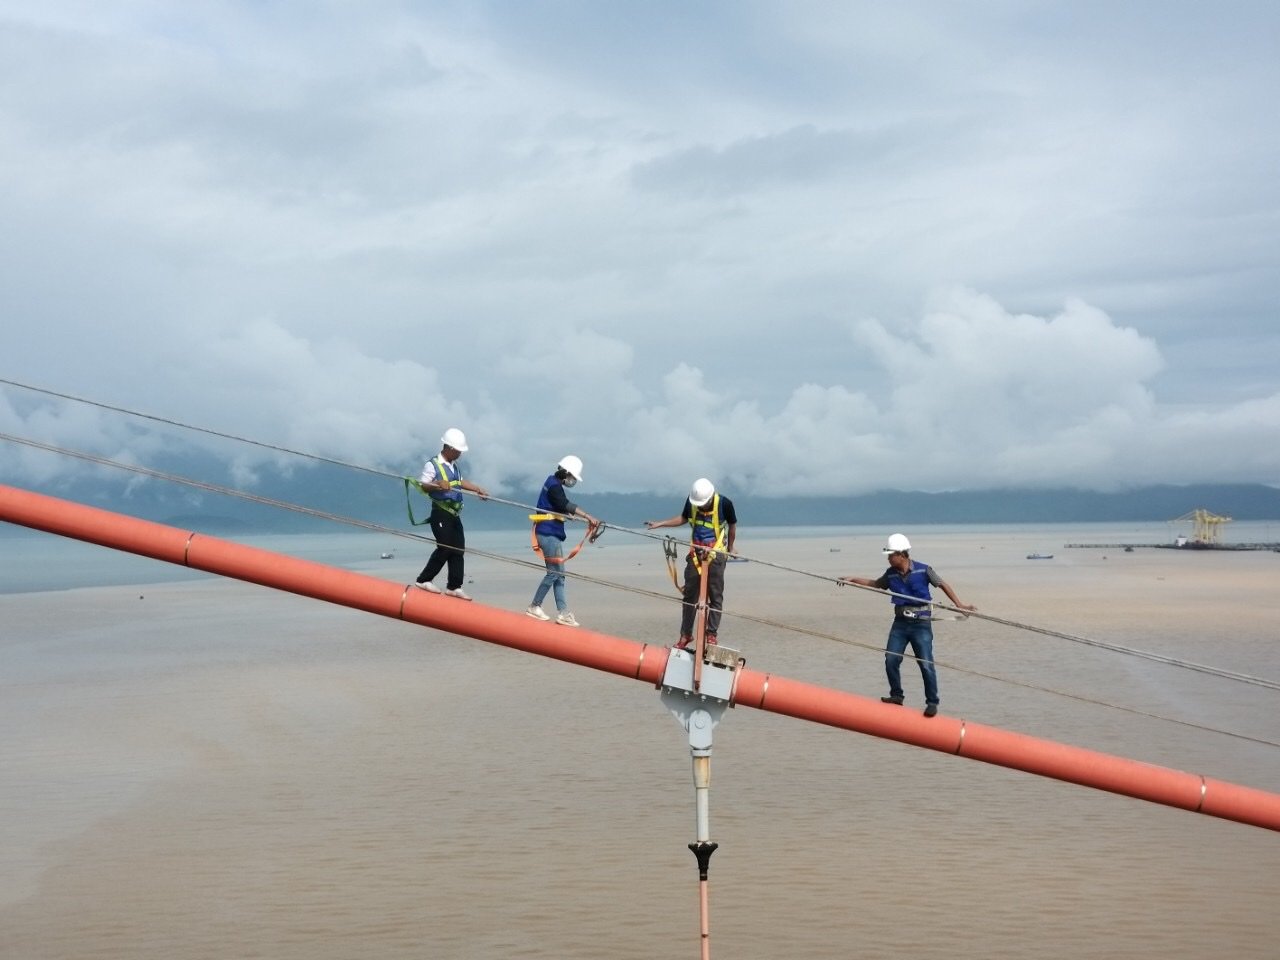 Đội kỹ thuật Xí nghiệp Cầu Đà Nẵng kiểm tra, bảo dưỡng cầu Thuận Phước